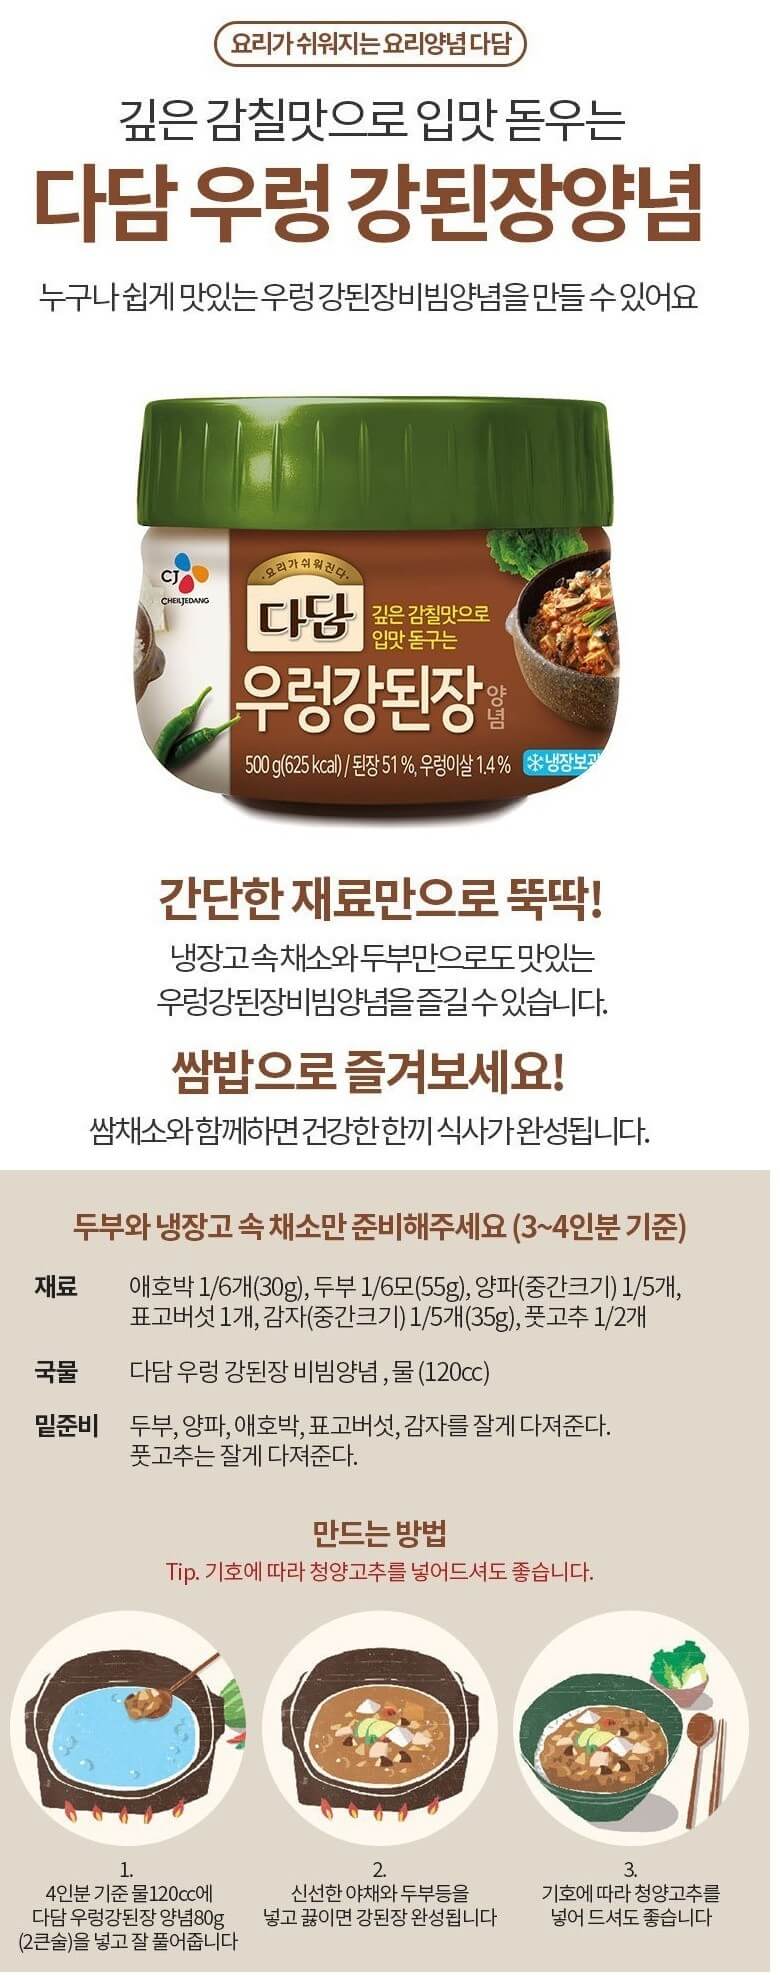 韓國食品-[CJ] Dadam 螺肉麵豉醬 500g